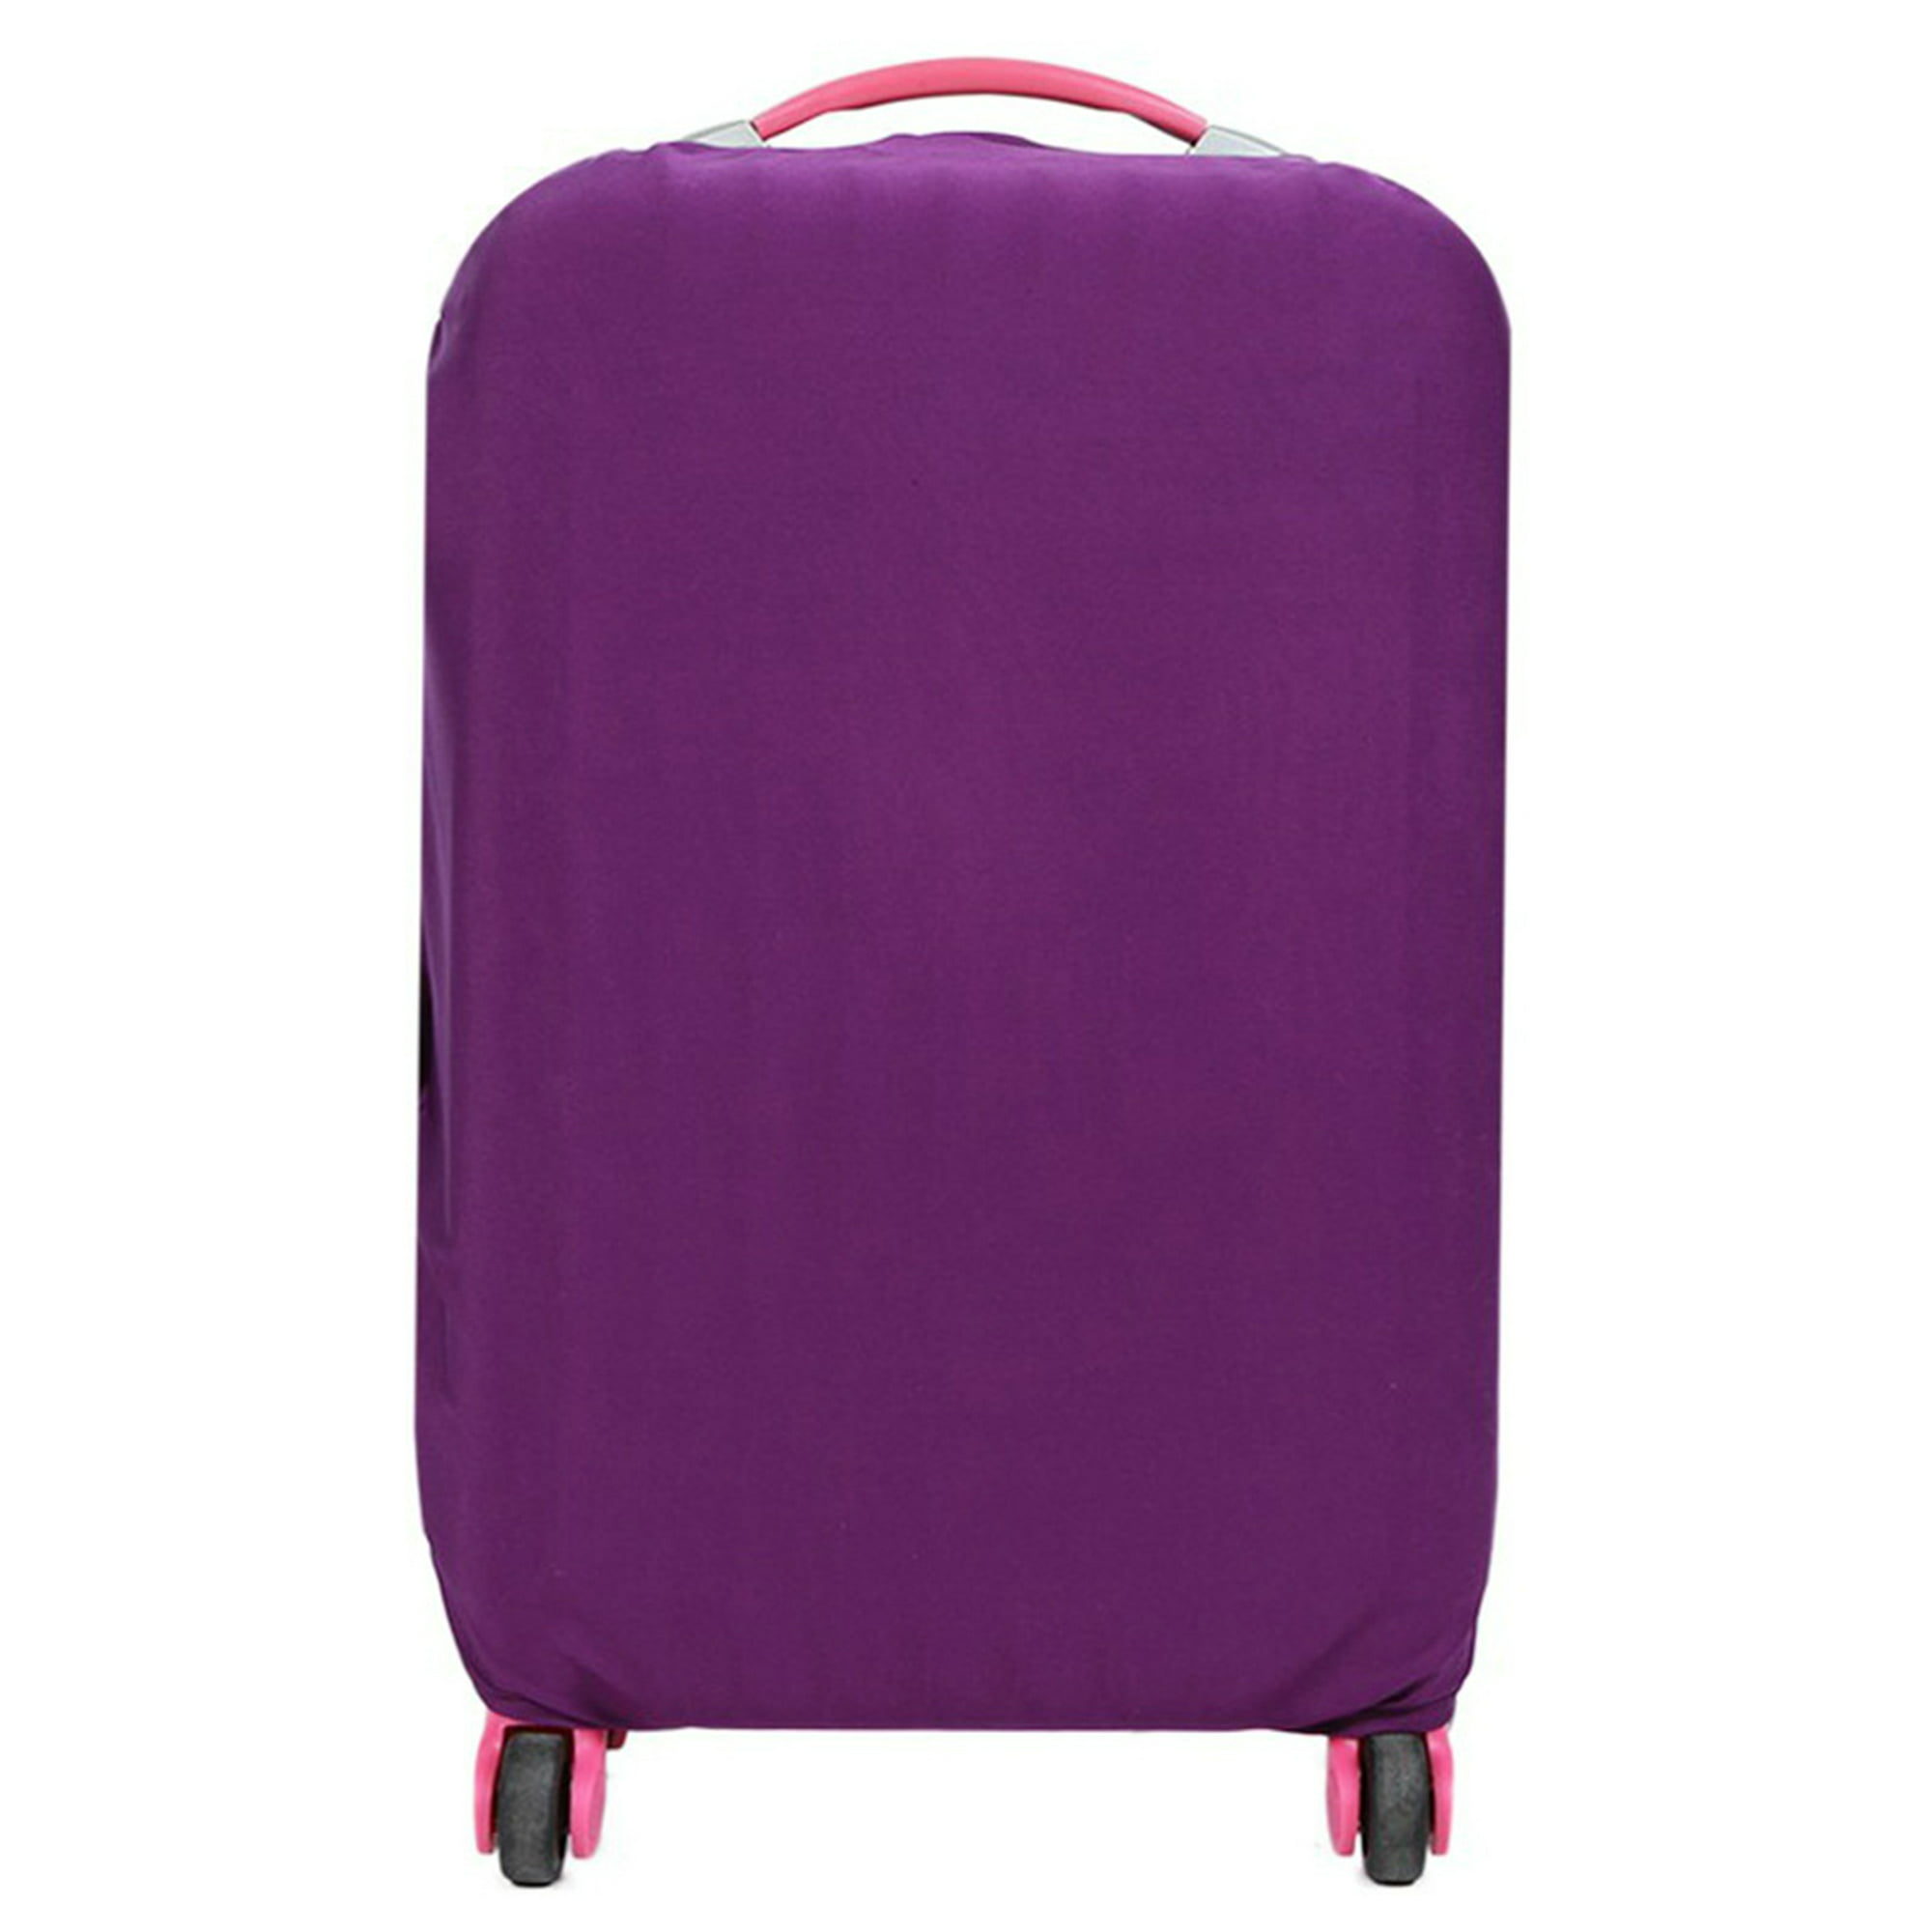 Funda para equipaje de color morado, protector de maleta de tela elástica,  funda protectora para equipaje con letras impresas, adecuada para maletas de  18 a 32 pulgadas, accesorios de viaje